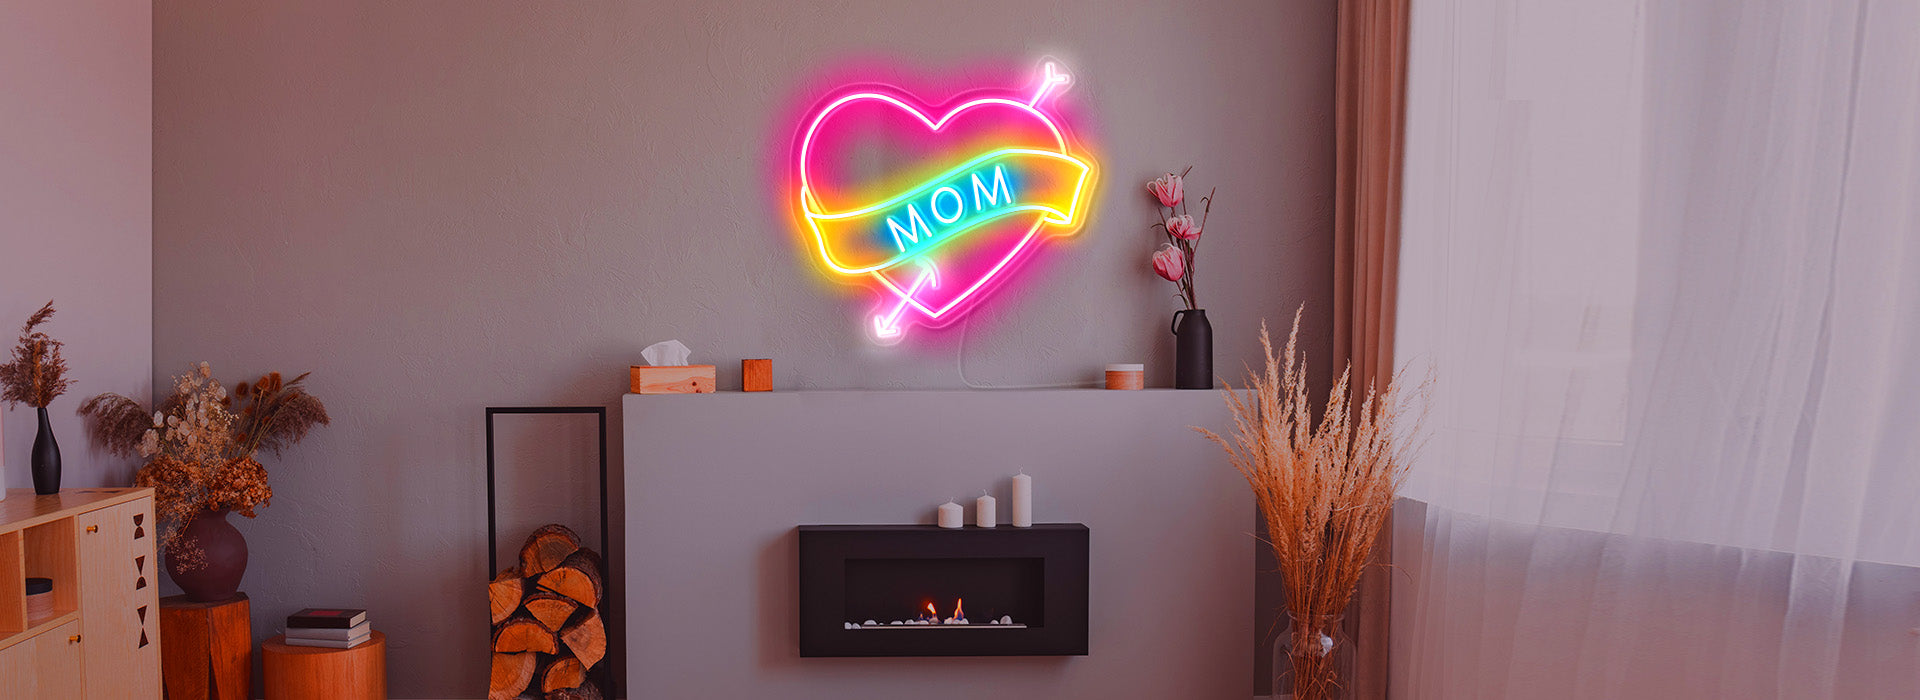 heart&mum neon light sign